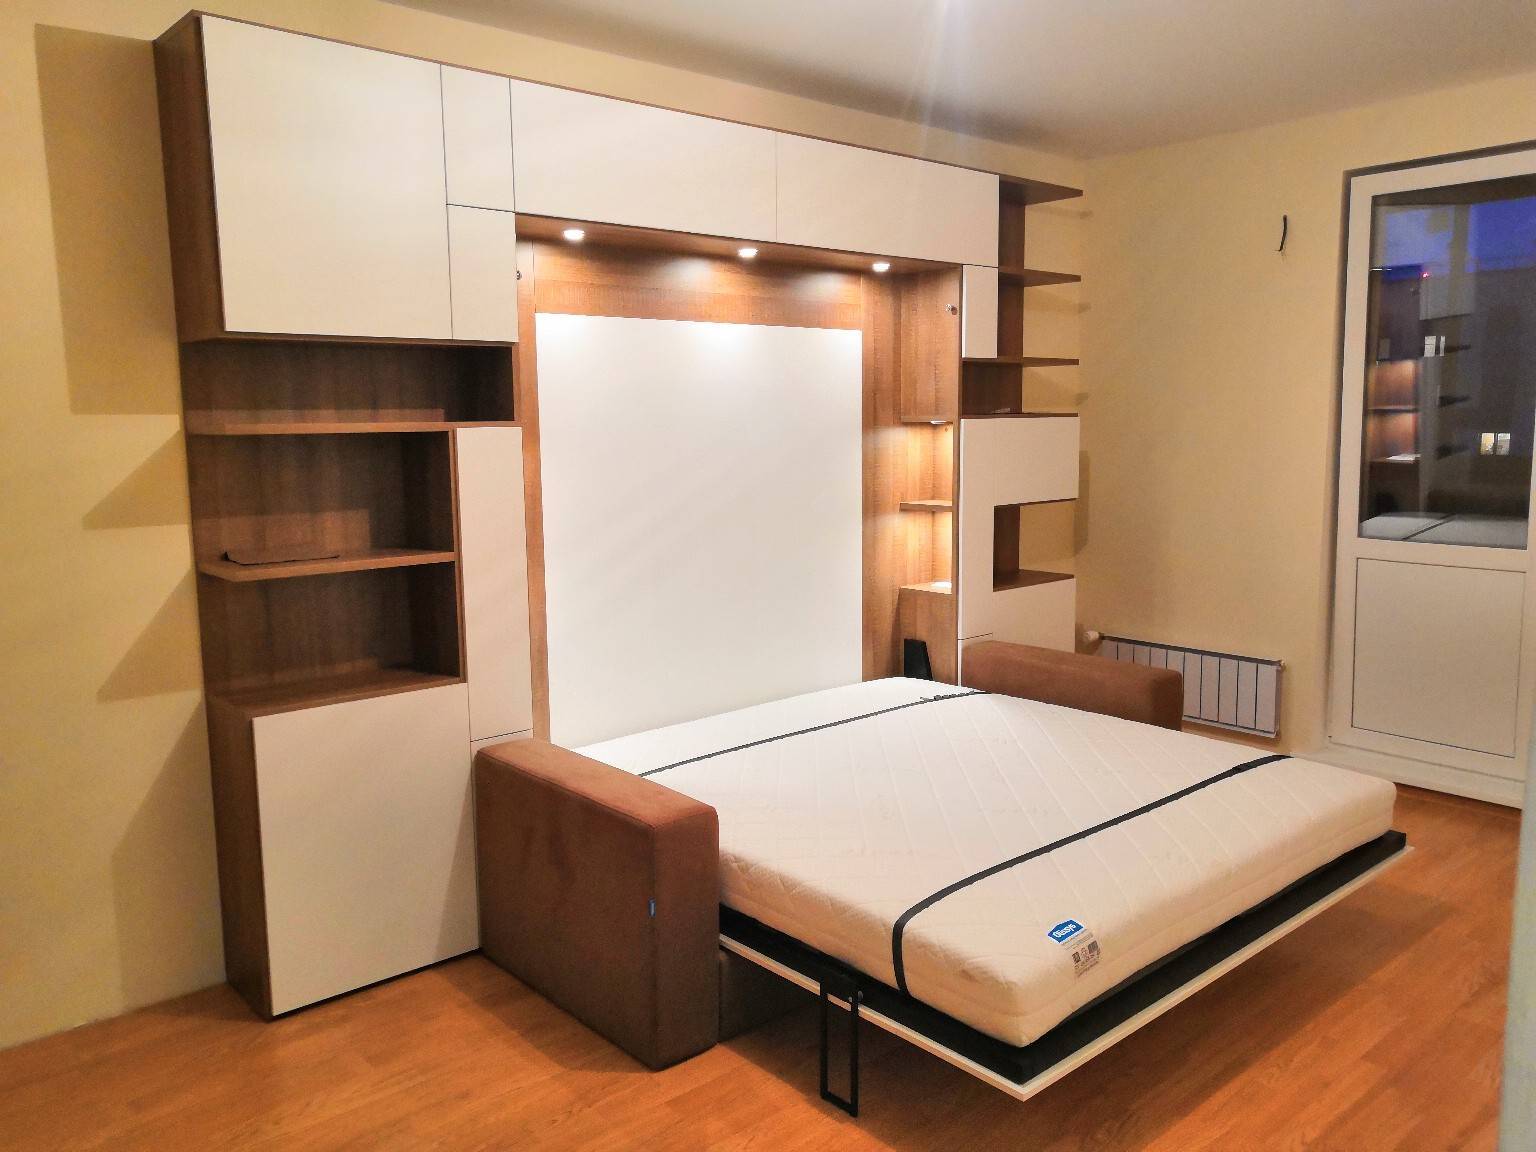 Как выбрать кровать трансформер для малогабаритной квартиры и стоит ли покупать?